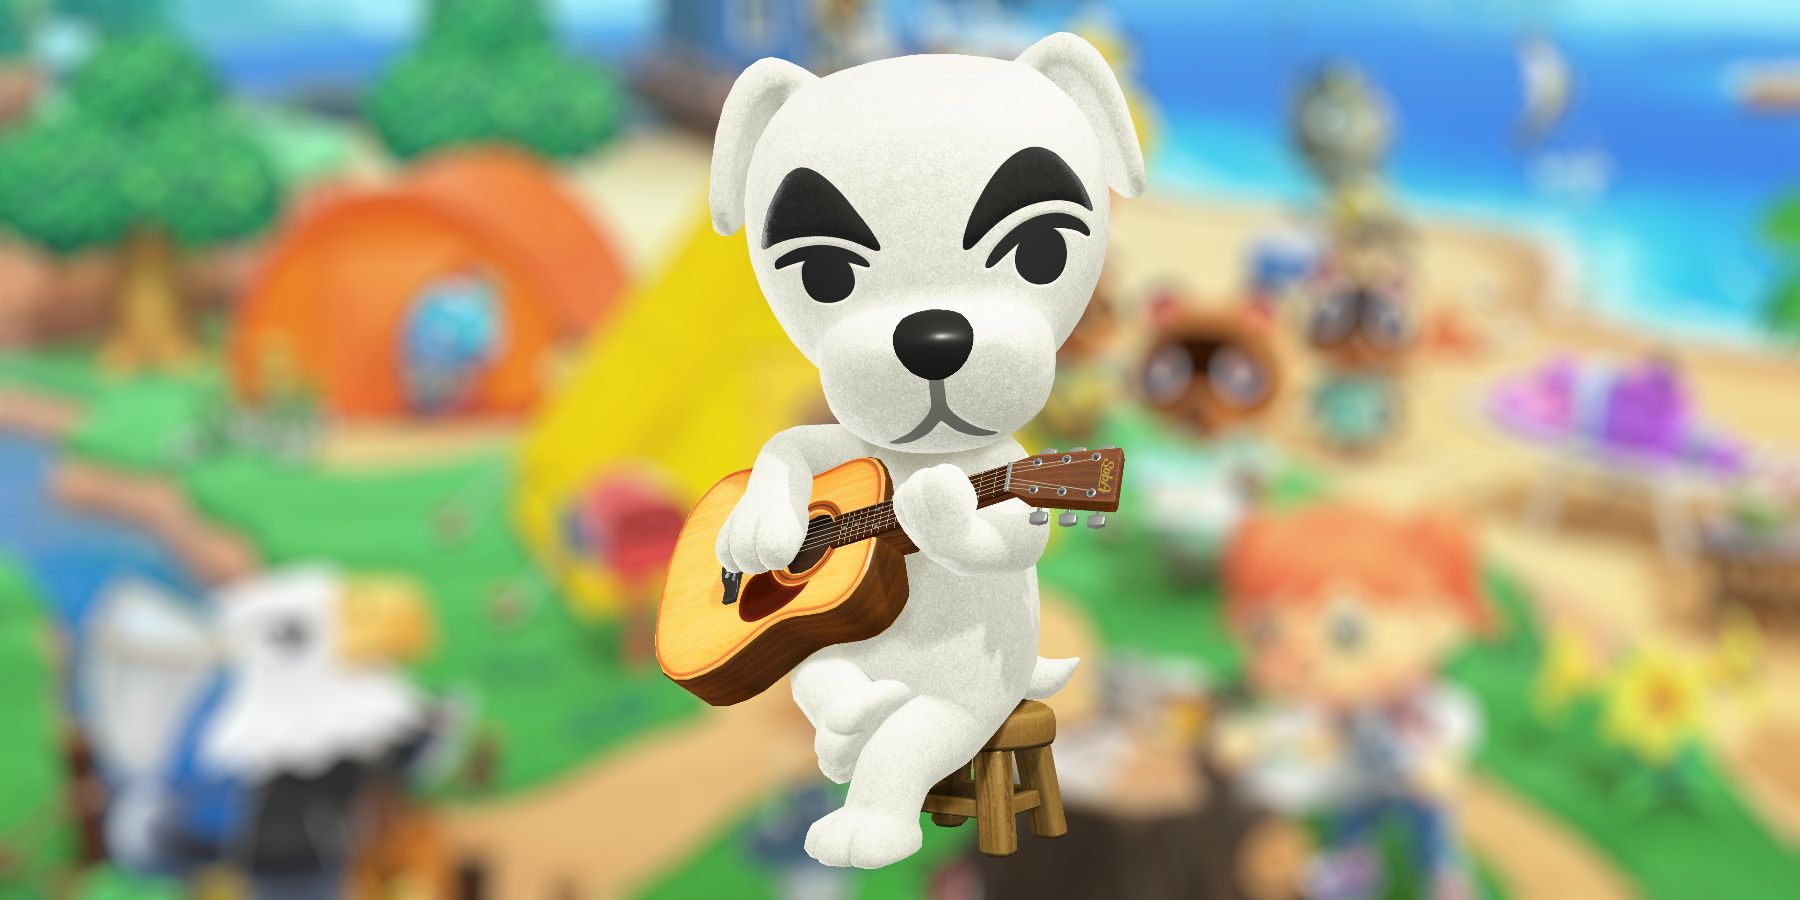 Animal Crossing: New Horizons 2.0 - All New K.K. Slider Songs